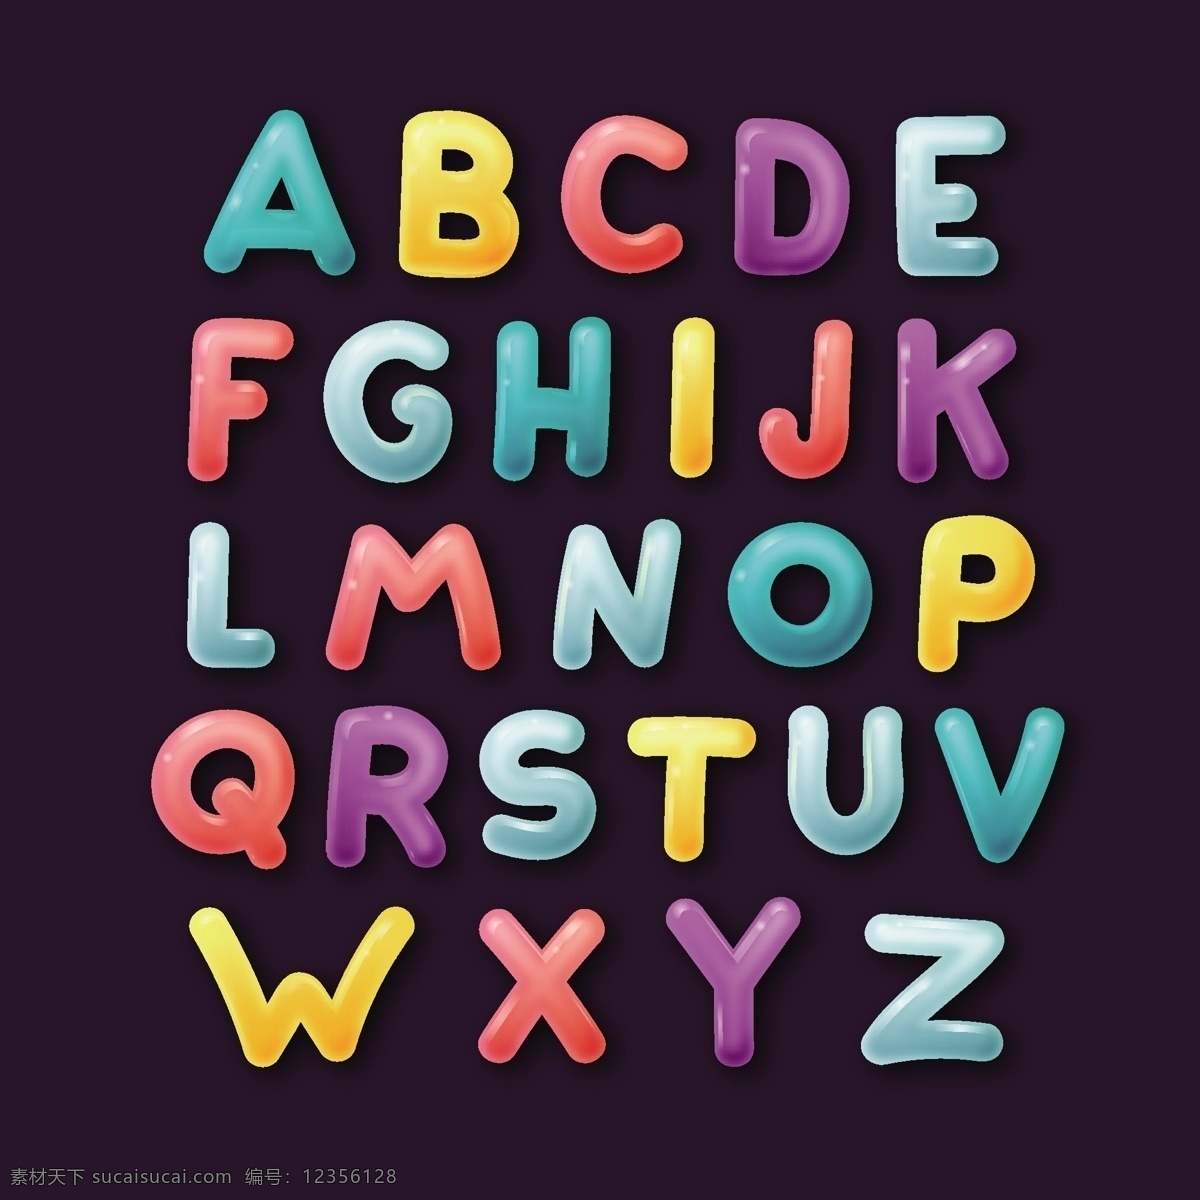 英文字母 数字图片 字母 数字 立体字 卡通字 立体数字 质感字母 卡通字母 儿童字母 水彩字母 立体字母 线条字母 简洁字母 简约字母 活泼字母 时尚字母 现代字母 彩色字母 矢量字母 手绘字母 手写字母 字母插画 创意字母 艺术字母 字母设计 大写字母 绚丽字母 炫彩字母 酷炫字母 数字字母 霓虹灯字母 数字与字母